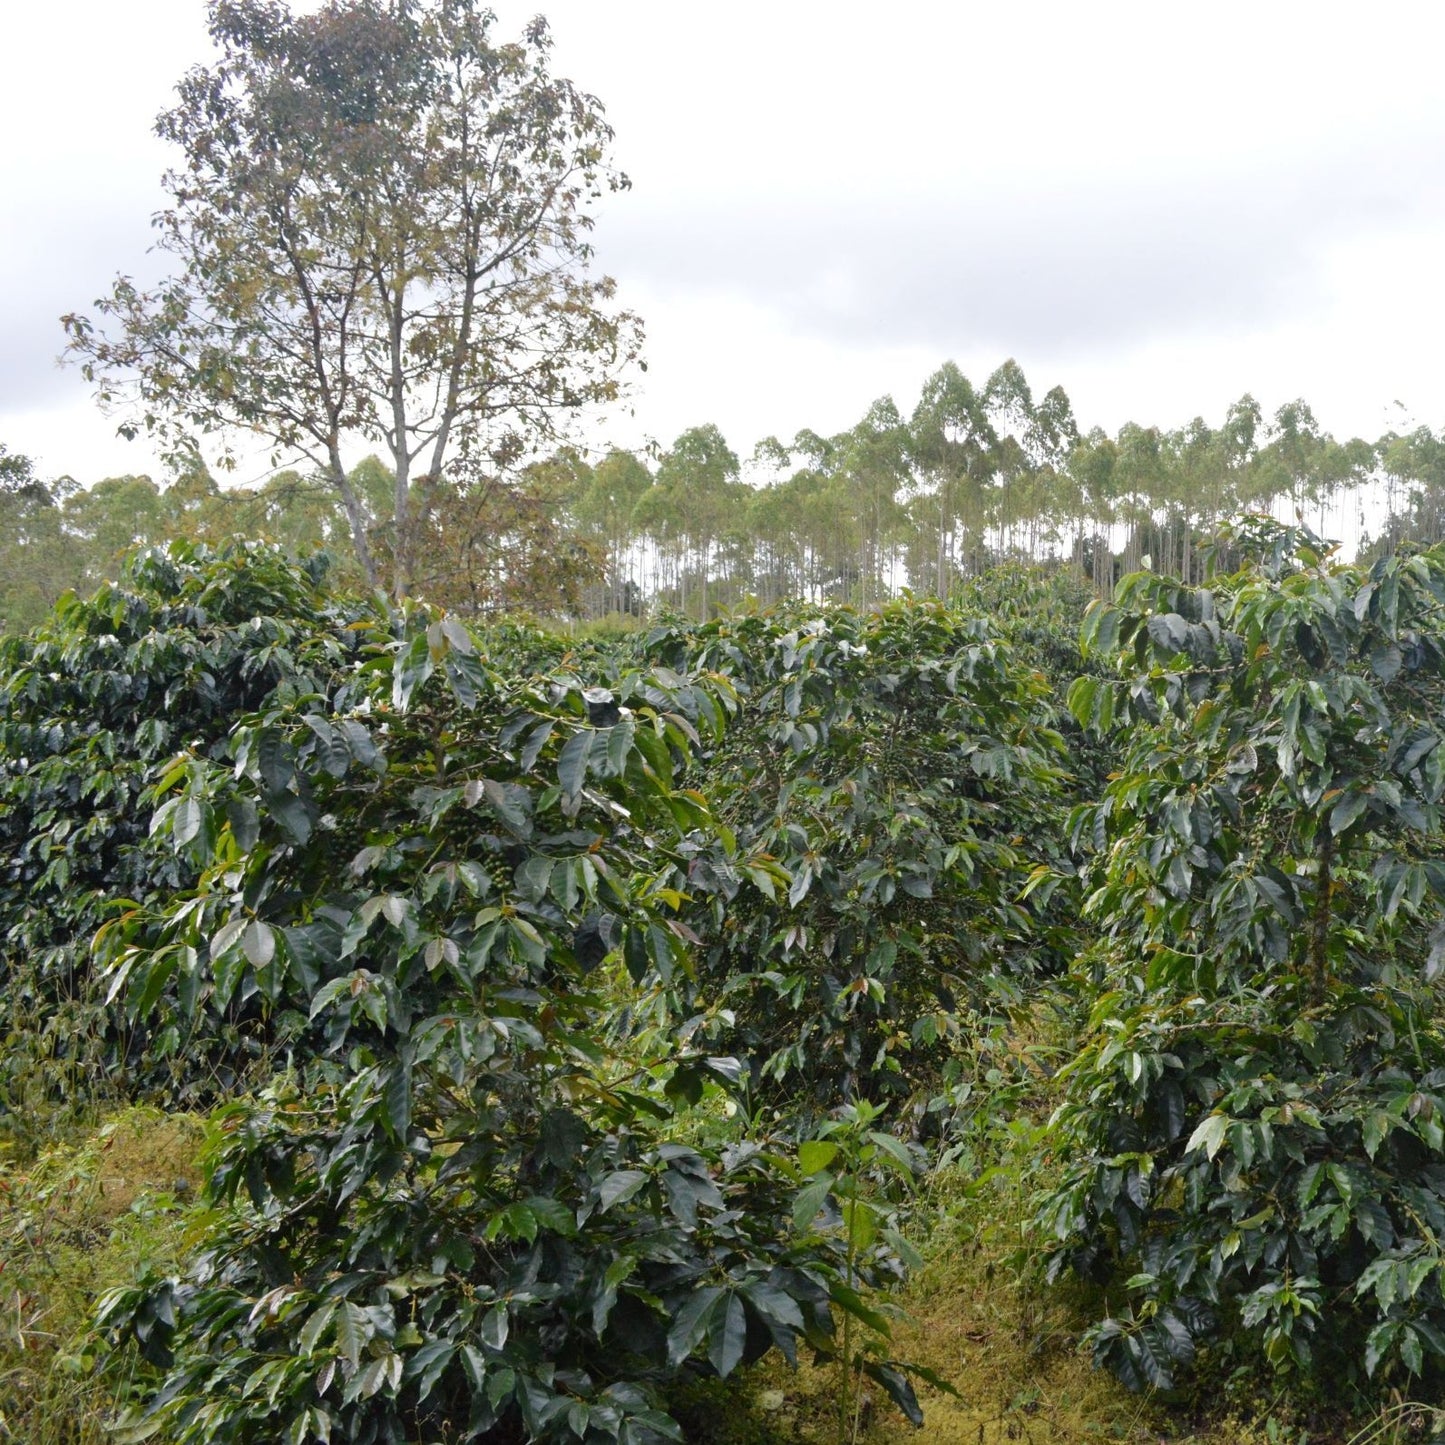 Indonesien Lintong - Geröstete Kaffeebohnen